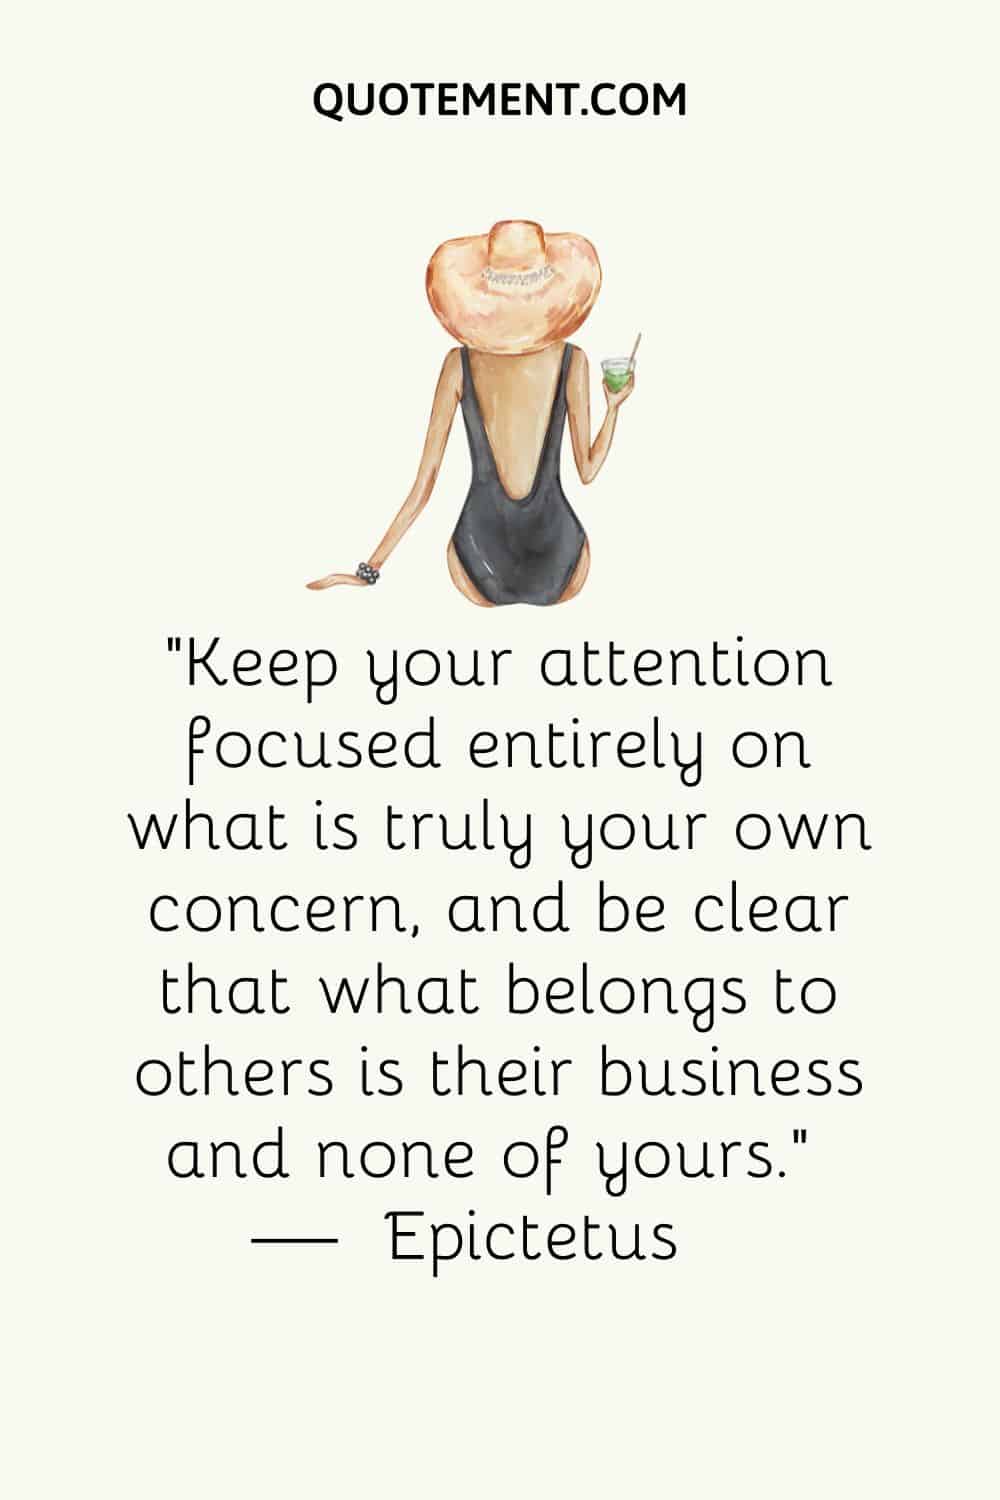 Mantén tu atención totalmente centrada en lo que realmente te concierne, y ten claro que lo que pertenece a los demás es asunto suyo y no tuyo